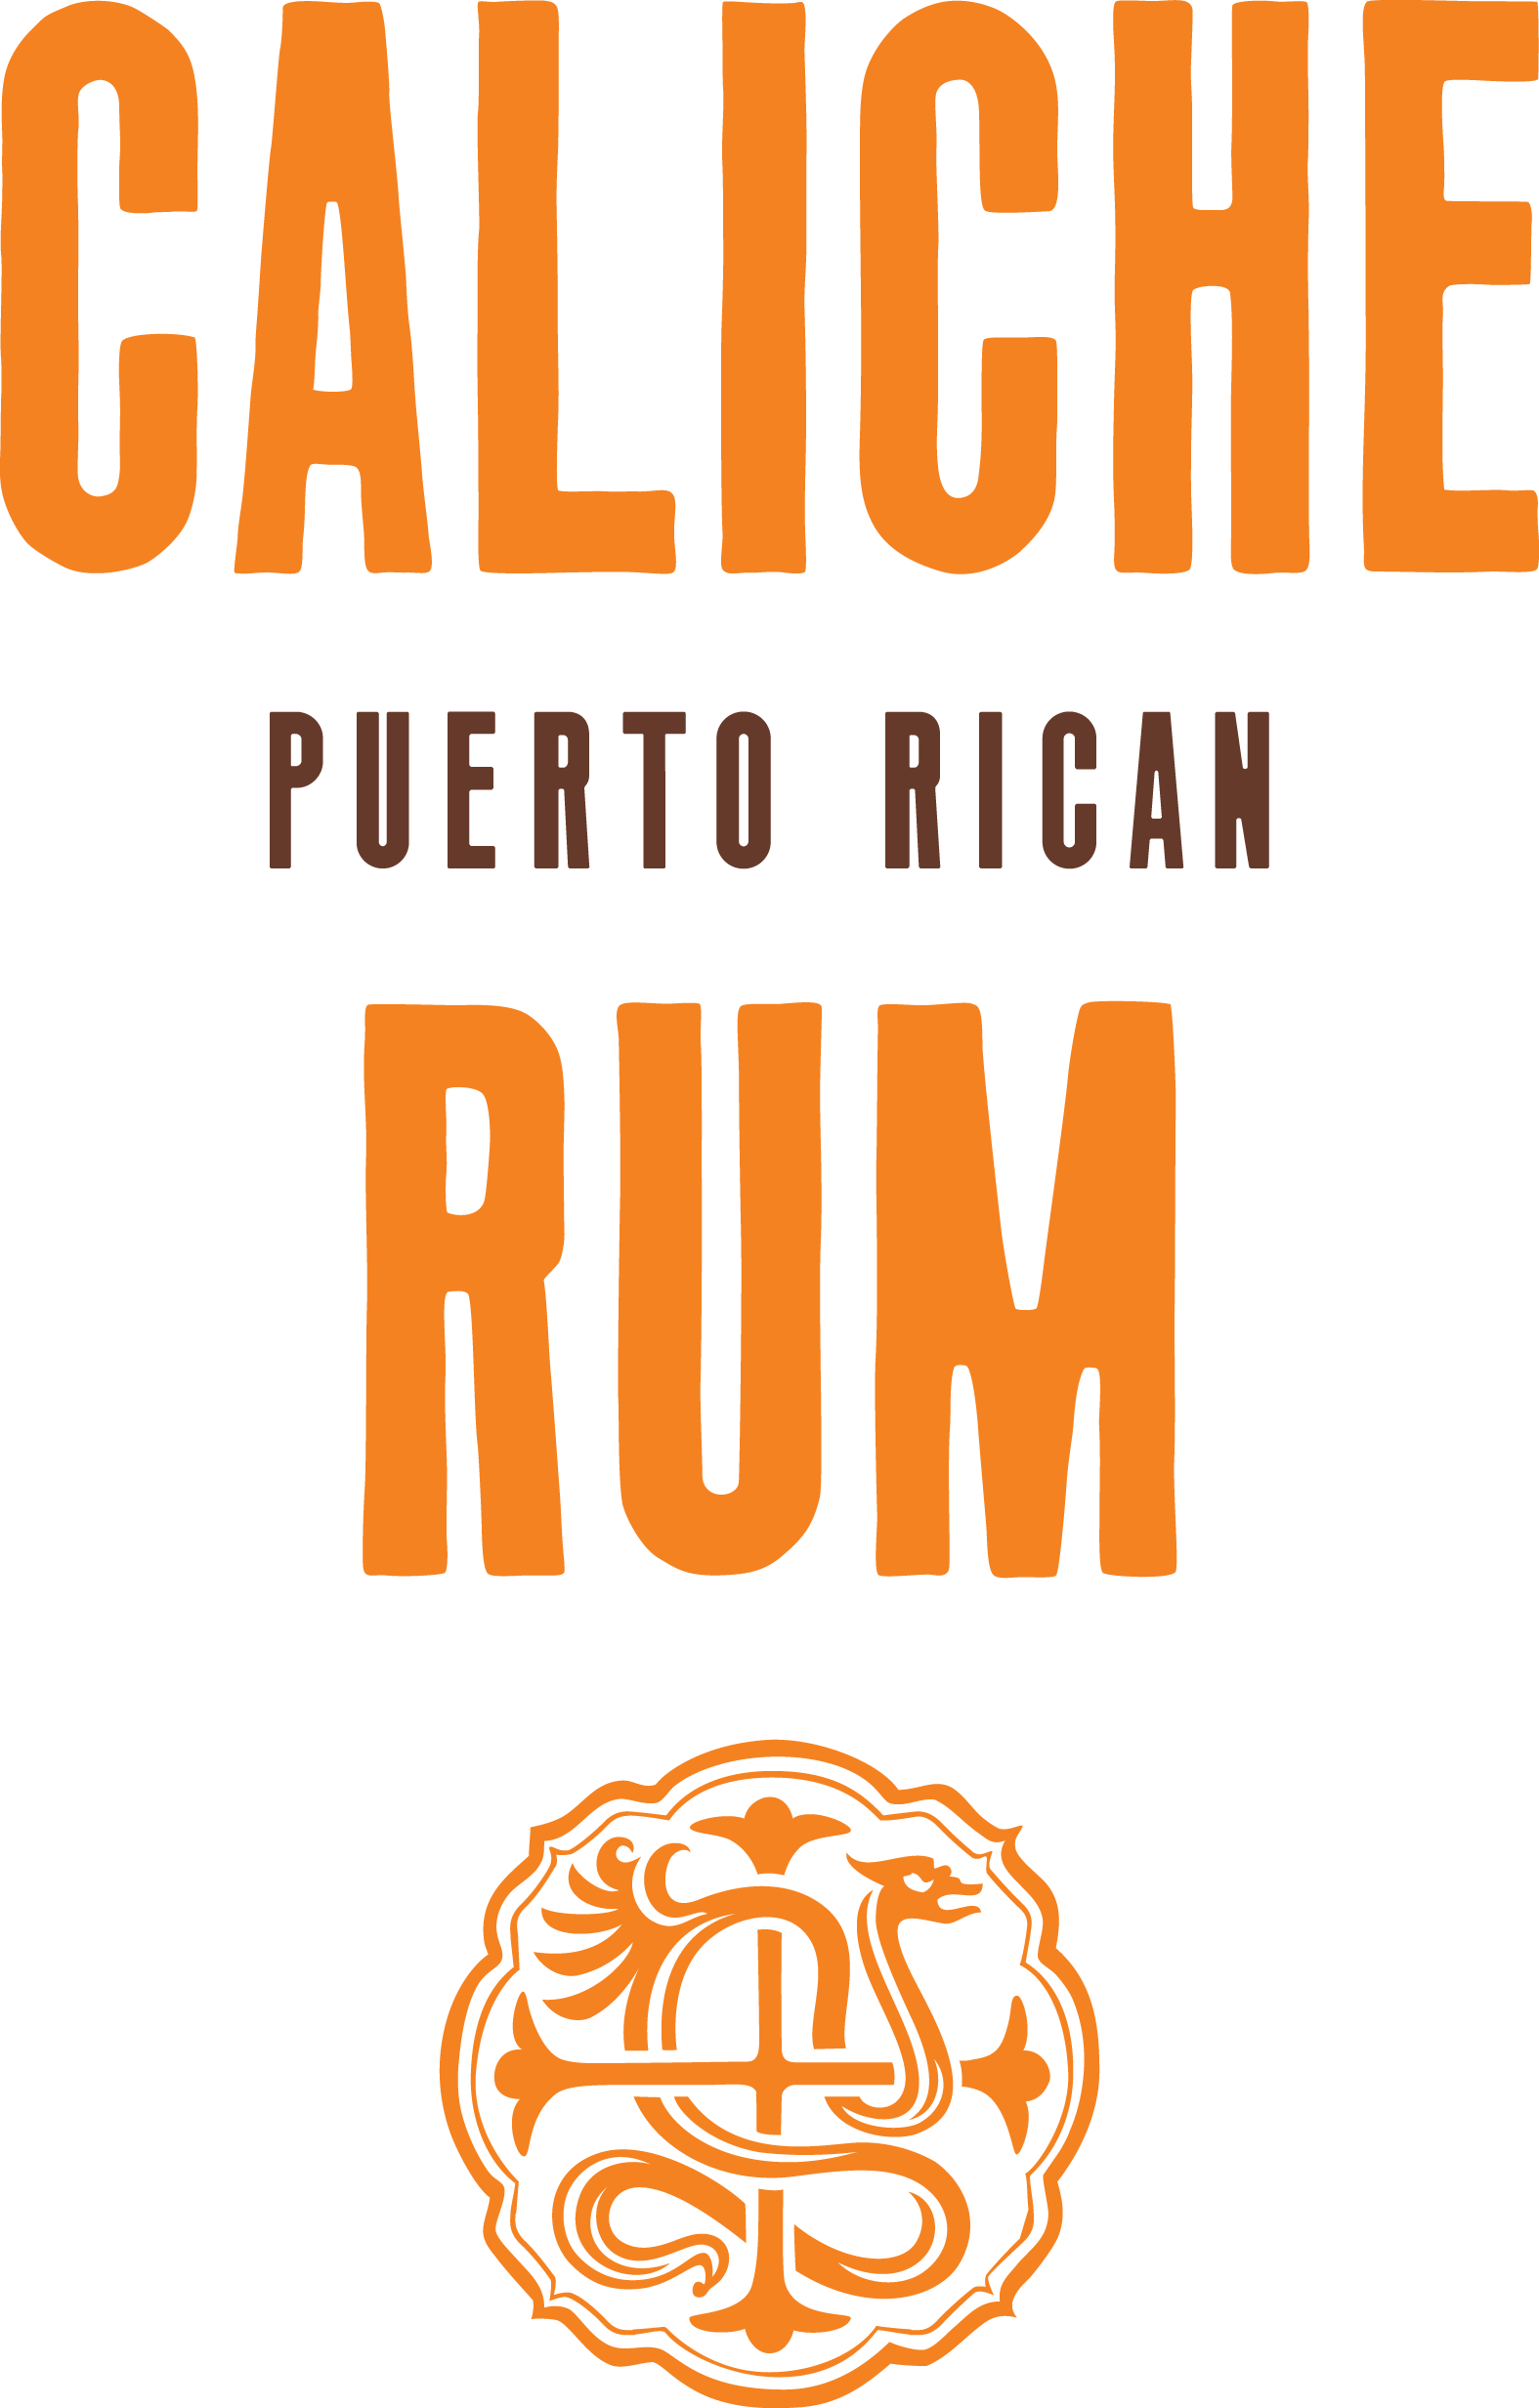 logo image of caliche